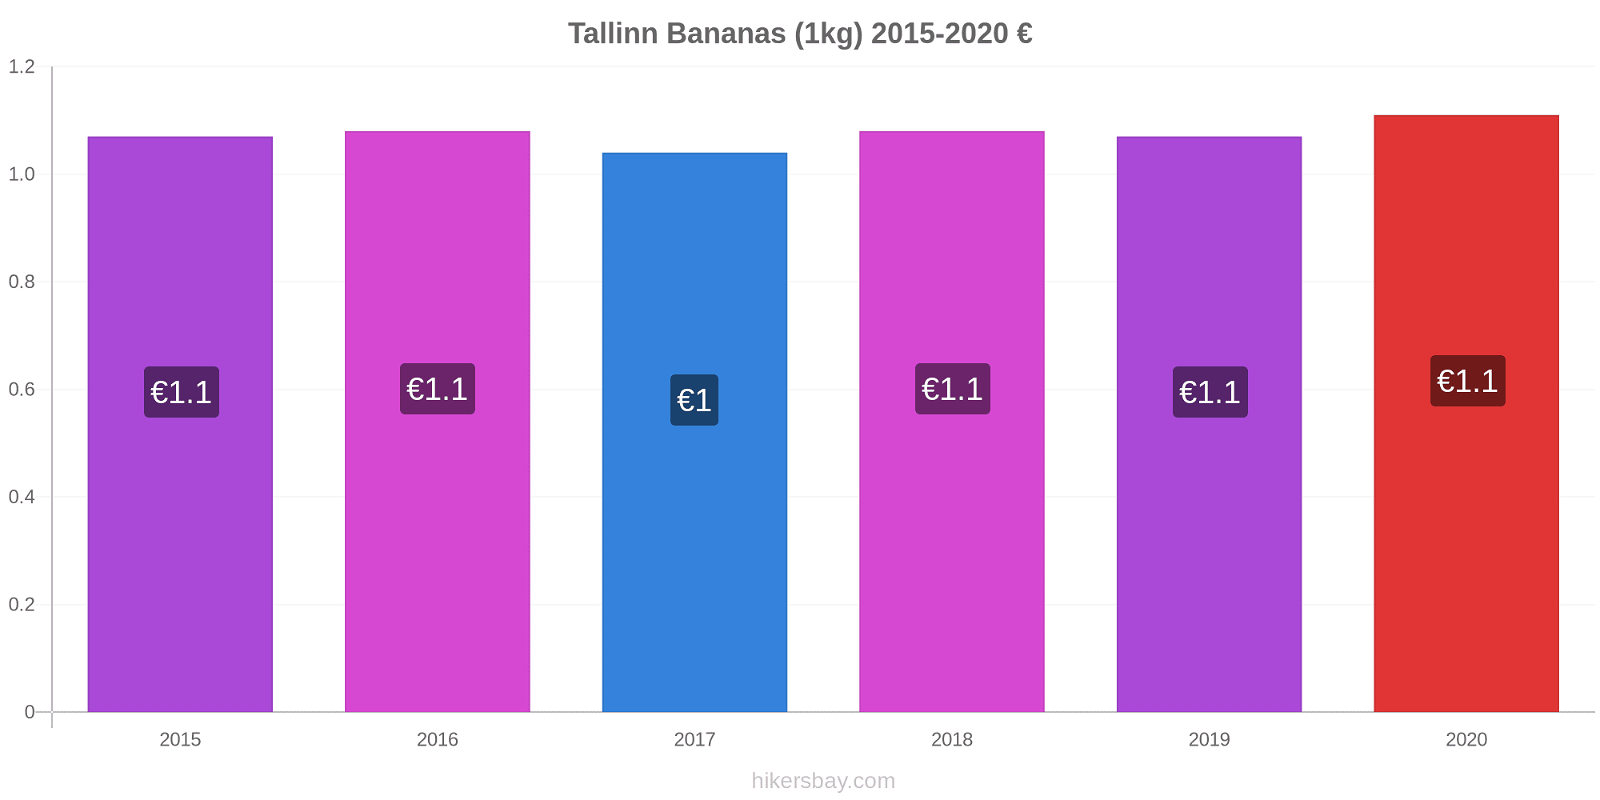 Tallinn variação de preço Banana (1kg) hikersbay.com